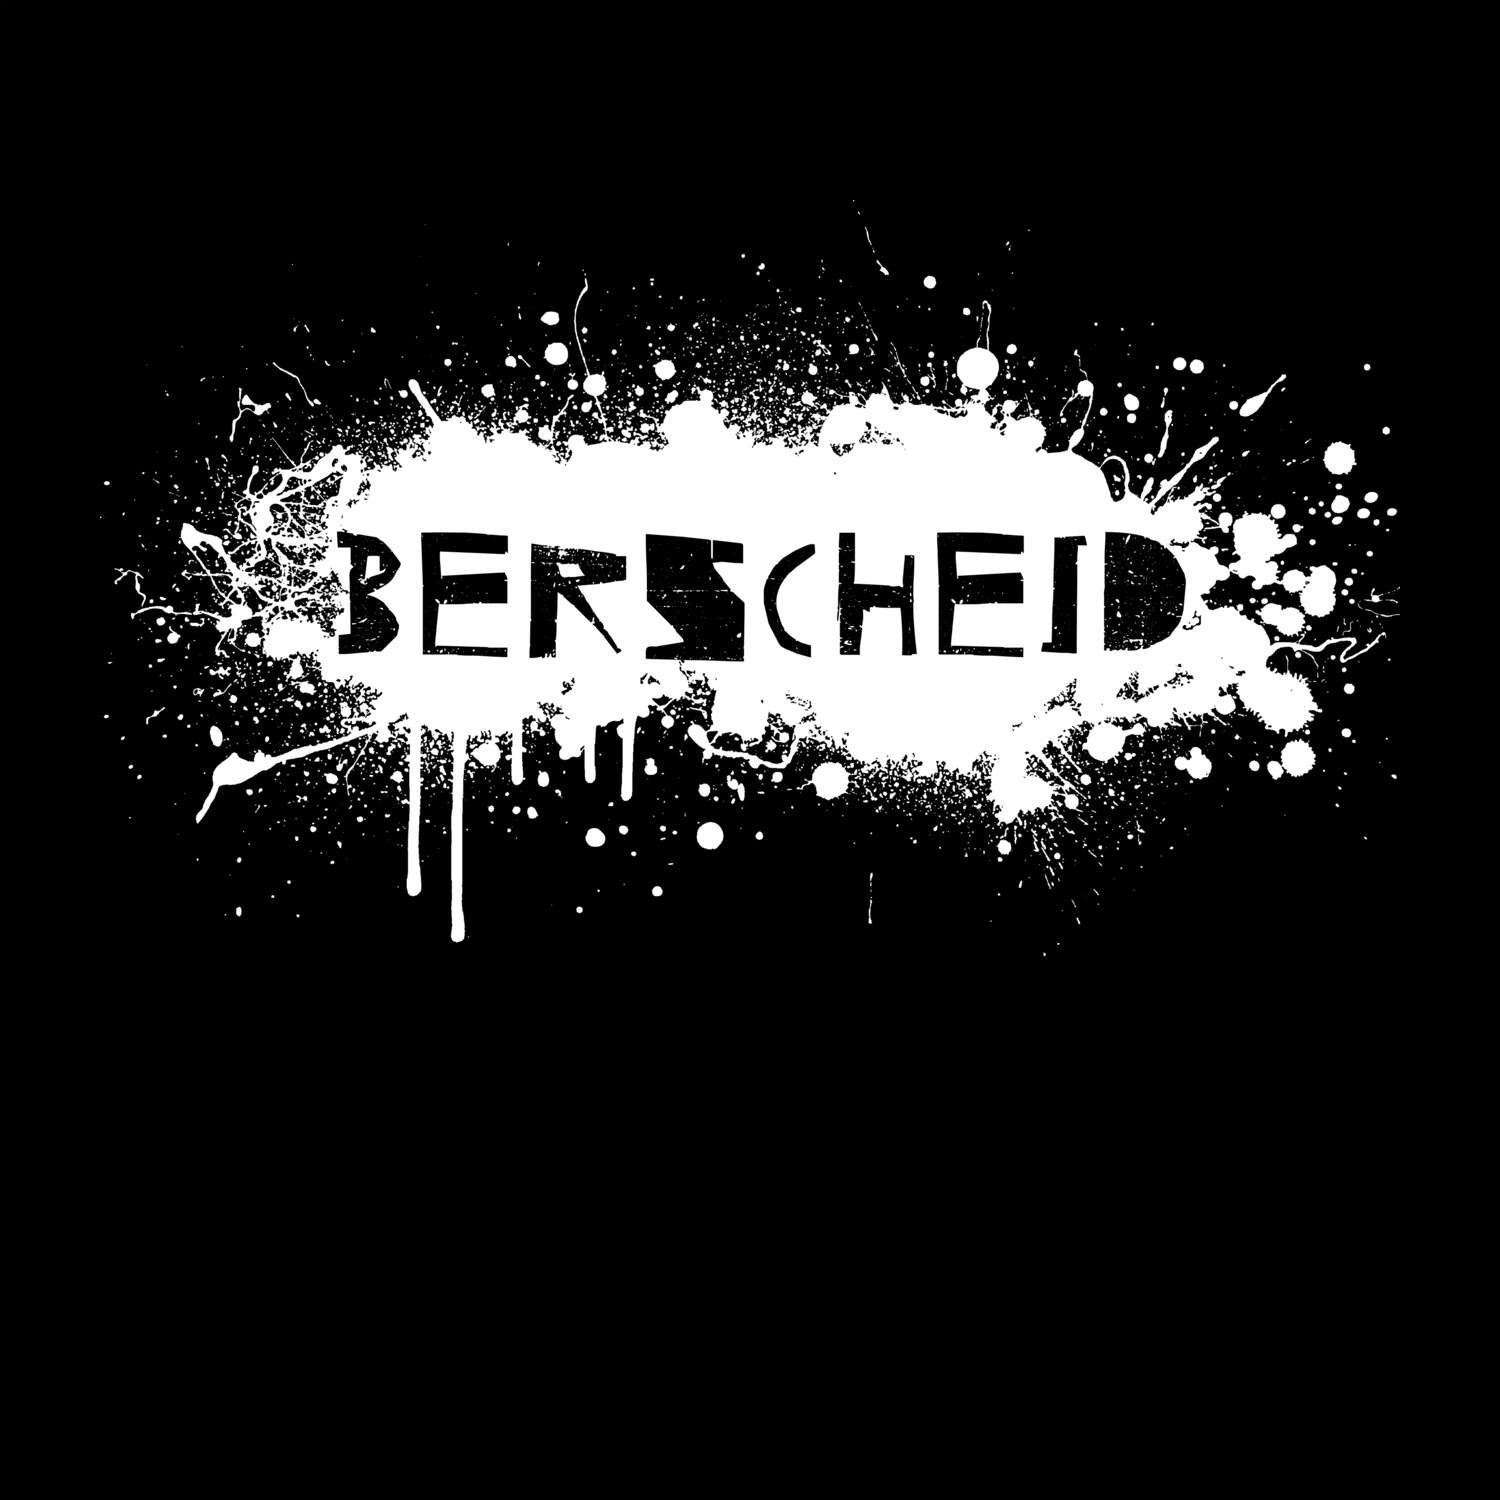 Berscheid T-Shirt »Paint Splash Punk«